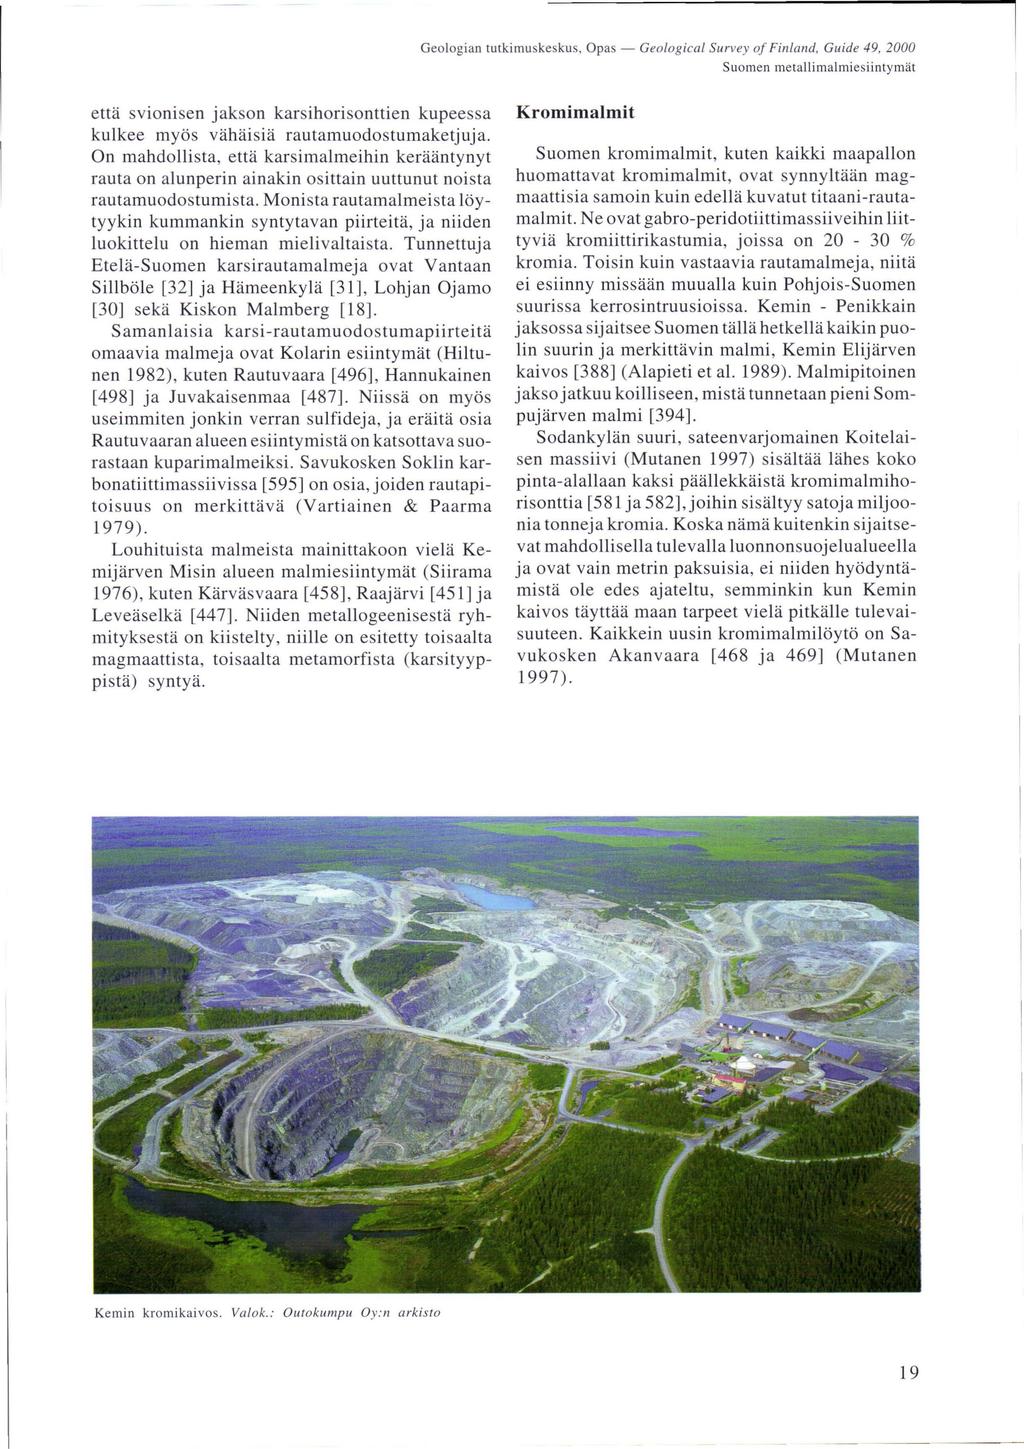 Geologian tutkimuskesku s, Opas - Geological Survey oj Fin la nd, Guide 49, 2000 Suomen metallimalmiesiintymät että svionisen jakson karsihorisonttien kupeessa kulkee myös vähäisiä